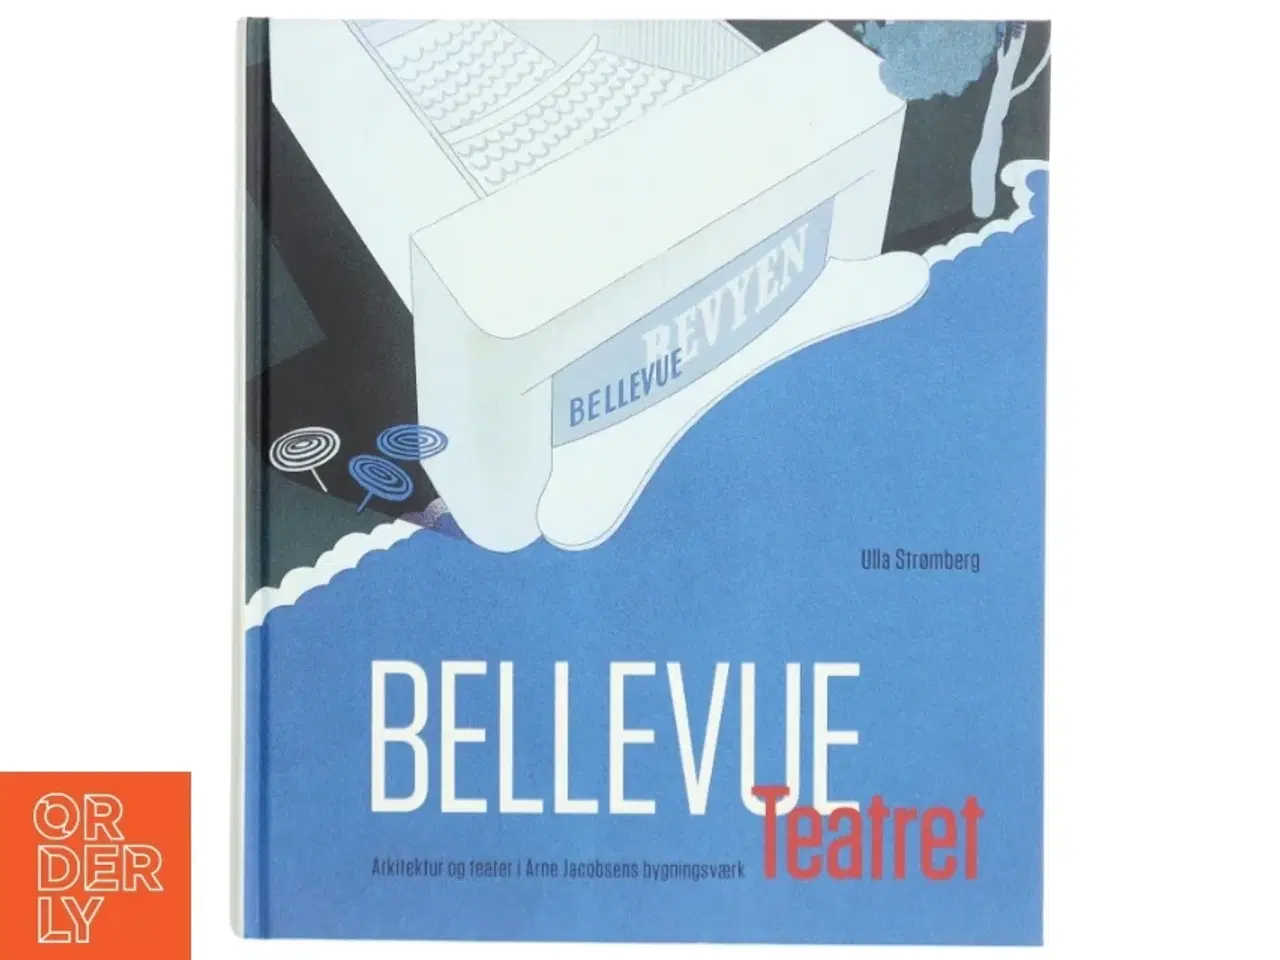 Billede 1 - 'Bellevue Teatret: arkitektur og teater i Arne Jacobsens bygningsværk' af Ulla Strømberg (bog)